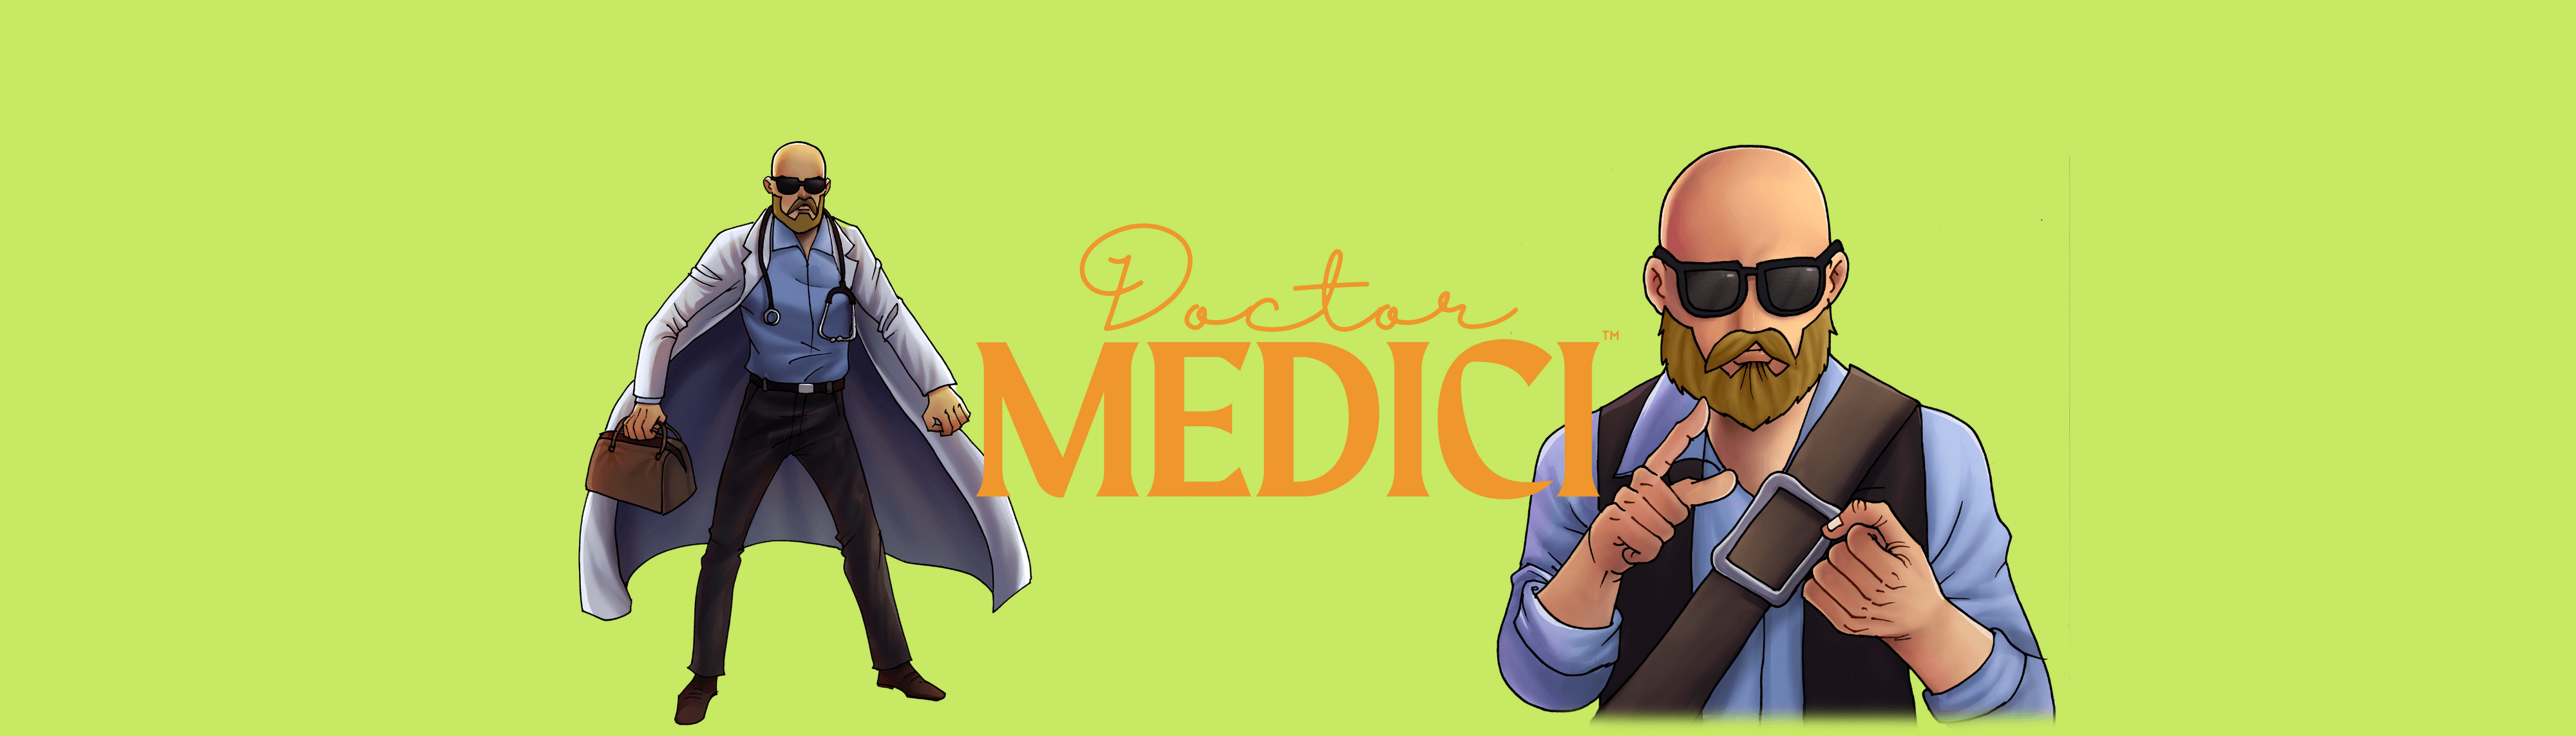 DoctorMedici banner